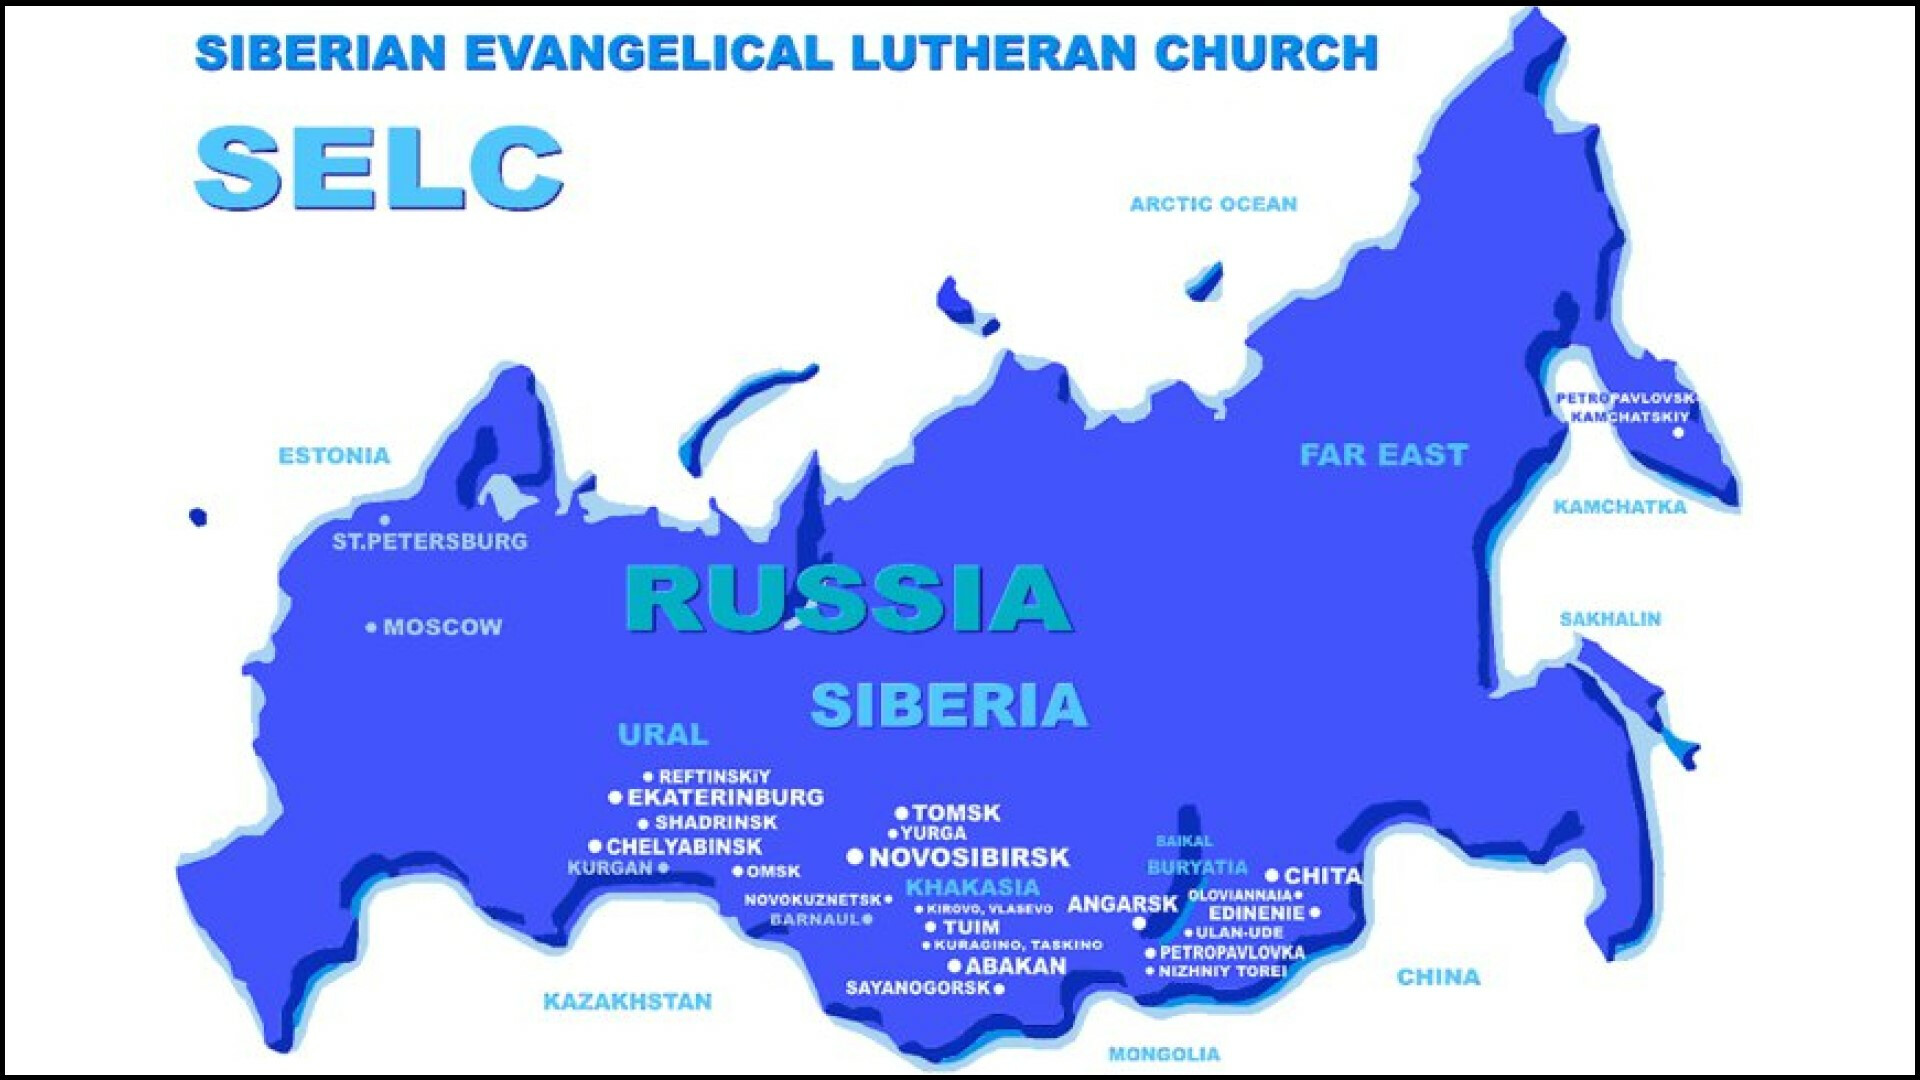 The Lutheran Church in Russia